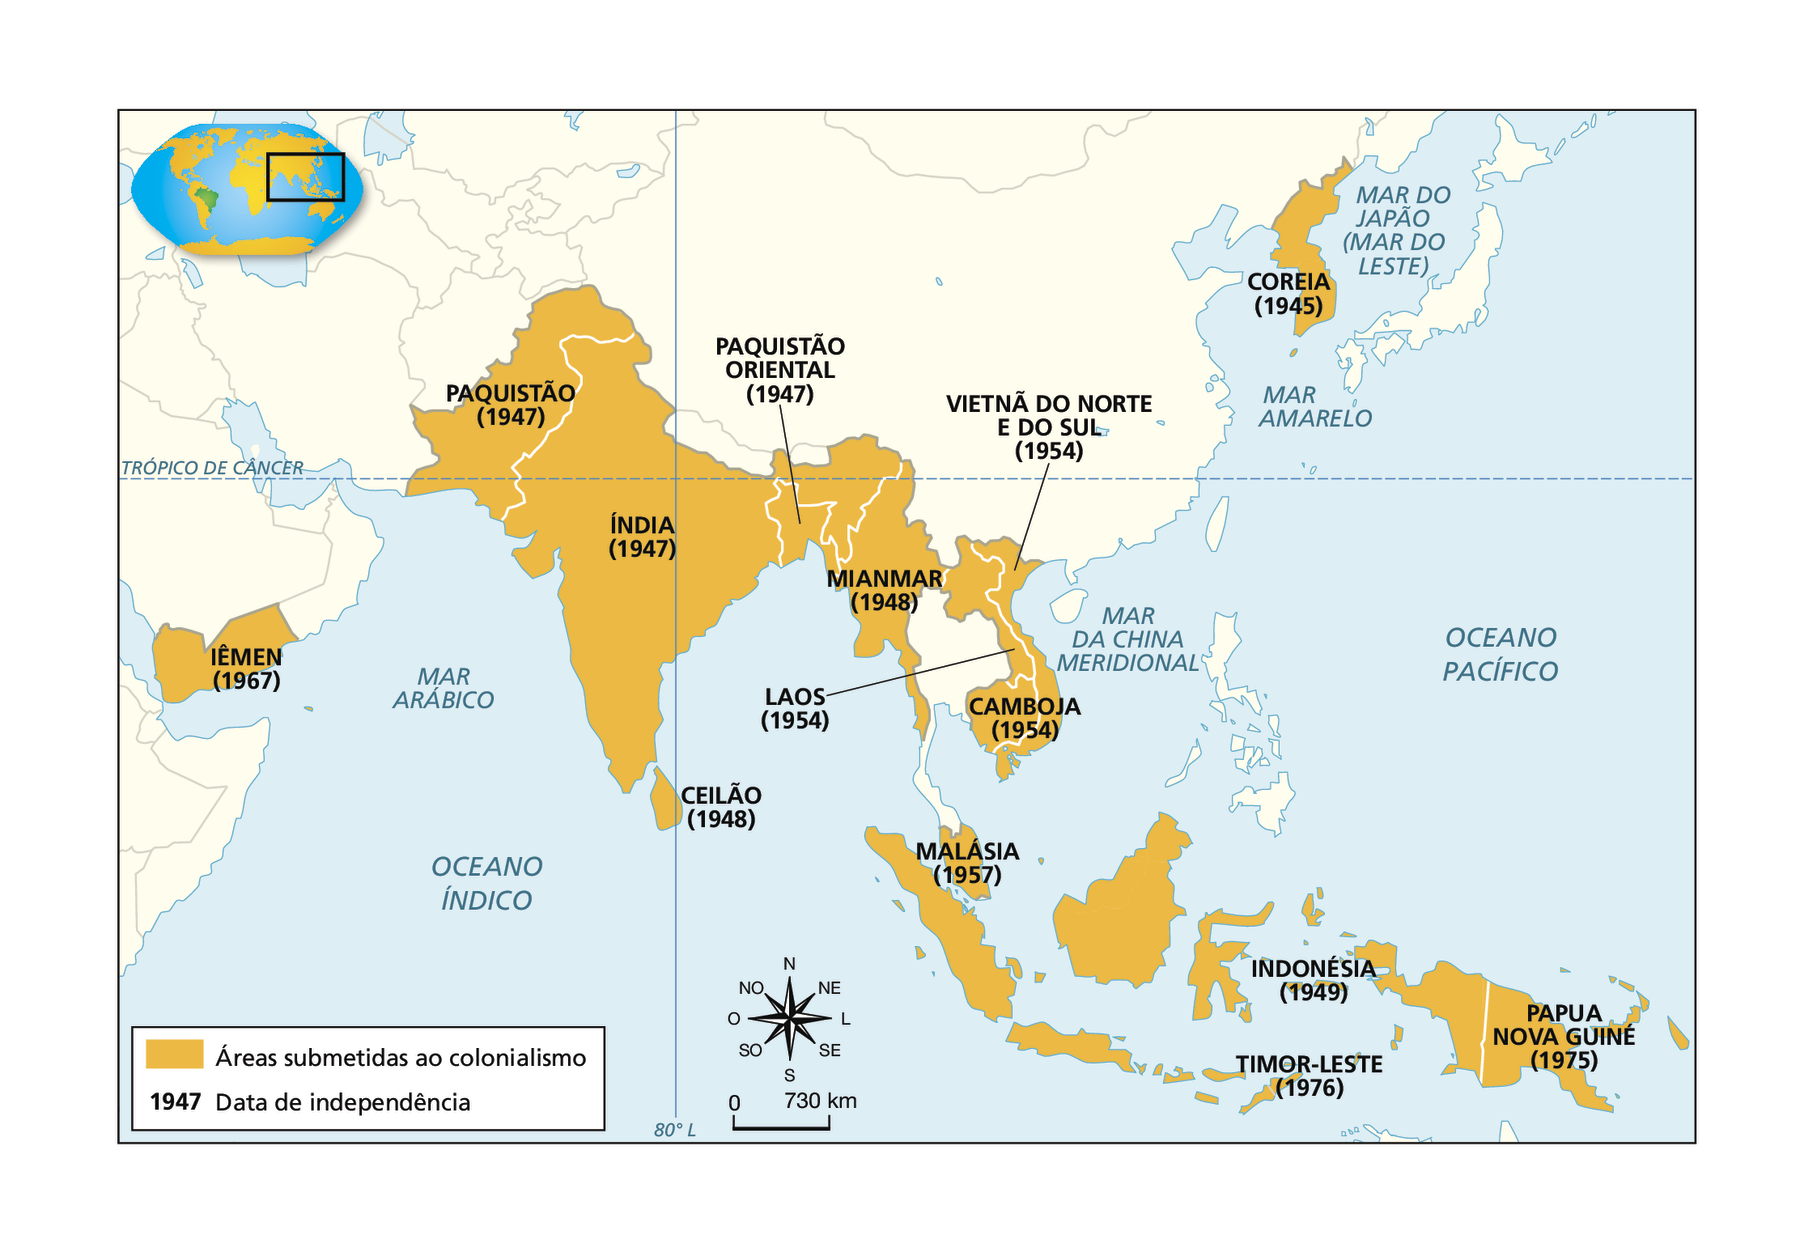 Mapa. Descolonização na Ásia (século vinte). Em amarelo, 'Áreas submetidas ao colonialismo' com nome dos países e as datas de independência de cada um deles: Iêmen (1967), Paquistão (1947), Índia (1947), Paquistão Oriental (1947), Ceilão (1948), Mianmar (1948), Vietnã do Norte e do Sul (1954), Laos (1954), Camboja (1954), Malásia (1957), Coreia (1945), Indonésia (1949), Timor-Leste (1976) e Papua Nova Guiné (1975). No canto inferior, ao centro, rosa dos ventos e escala de 0 a 730 quilômetros.